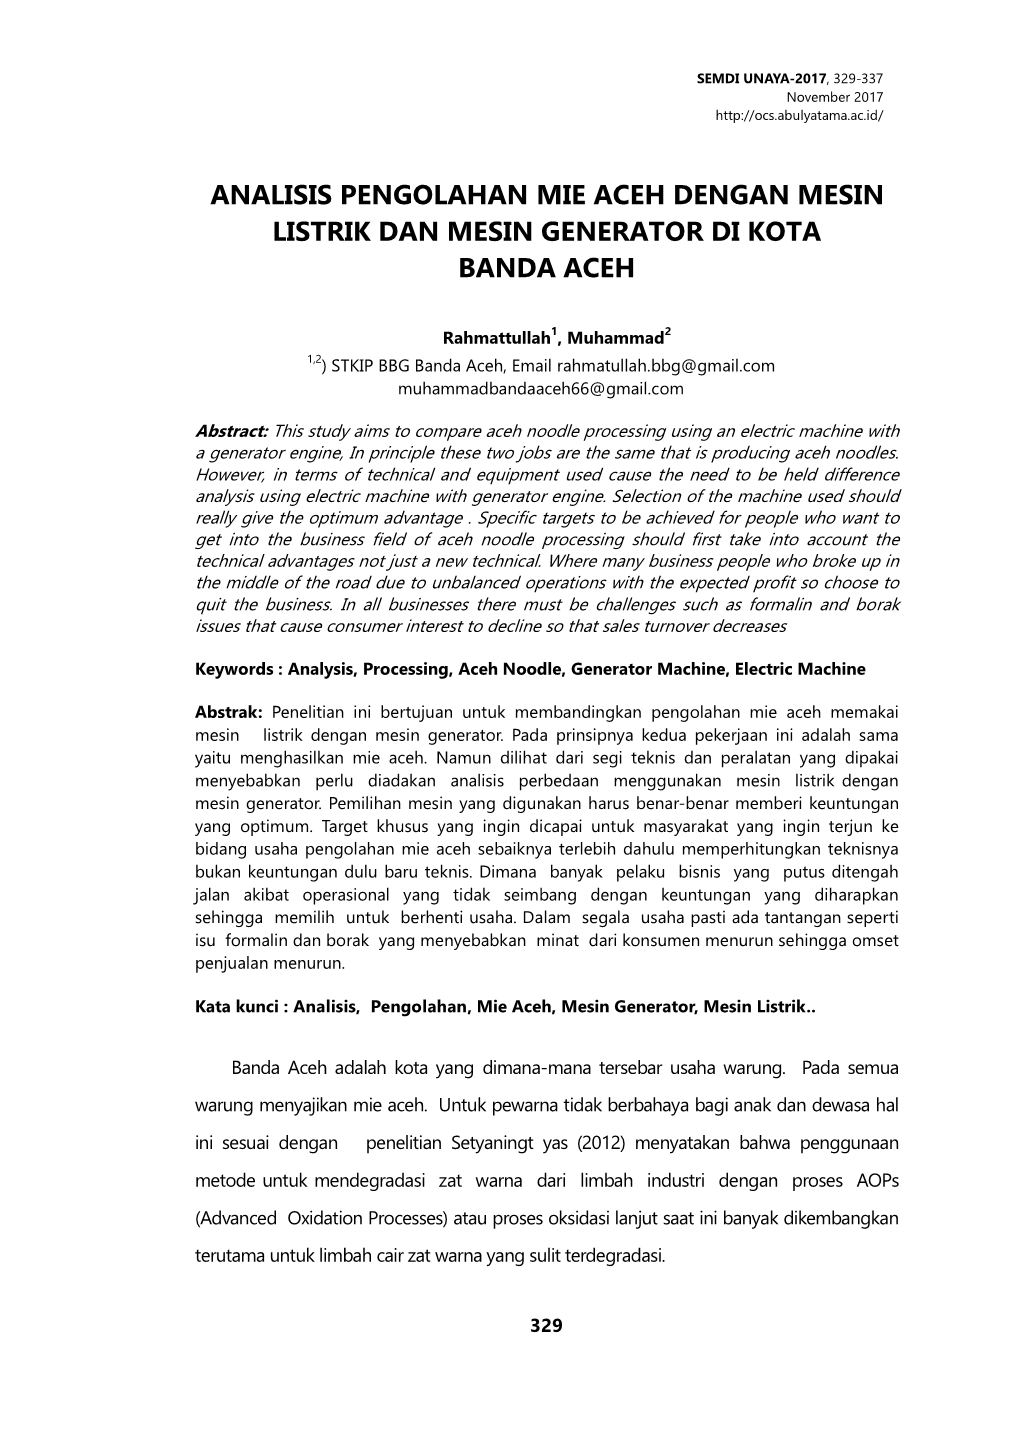 Analisis Pengolahan Mie Aceh Dengan Mesin Listrik Dan Mesin Generator Di Kota Banda Aceh